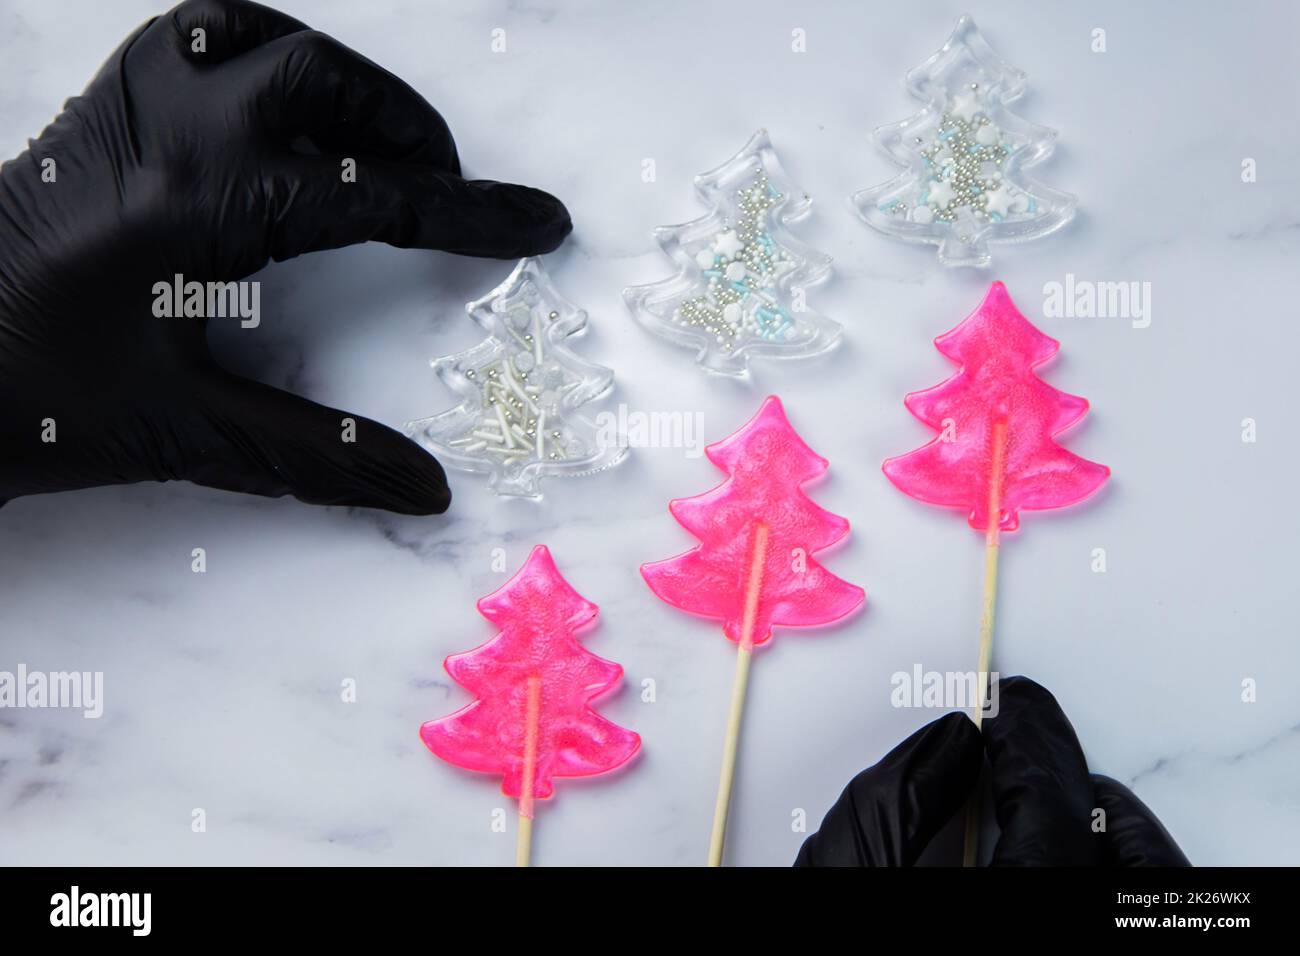 Drei pinkfarbene Lutscher in Form von Weihnachtsbäumen liegen auf weißem Marmor, über ihnen sind weiße Weihnachtsbäume - Lutscher mit Pulver, die extremen halten Hände in schwarzen Handschuhen. Stockfoto